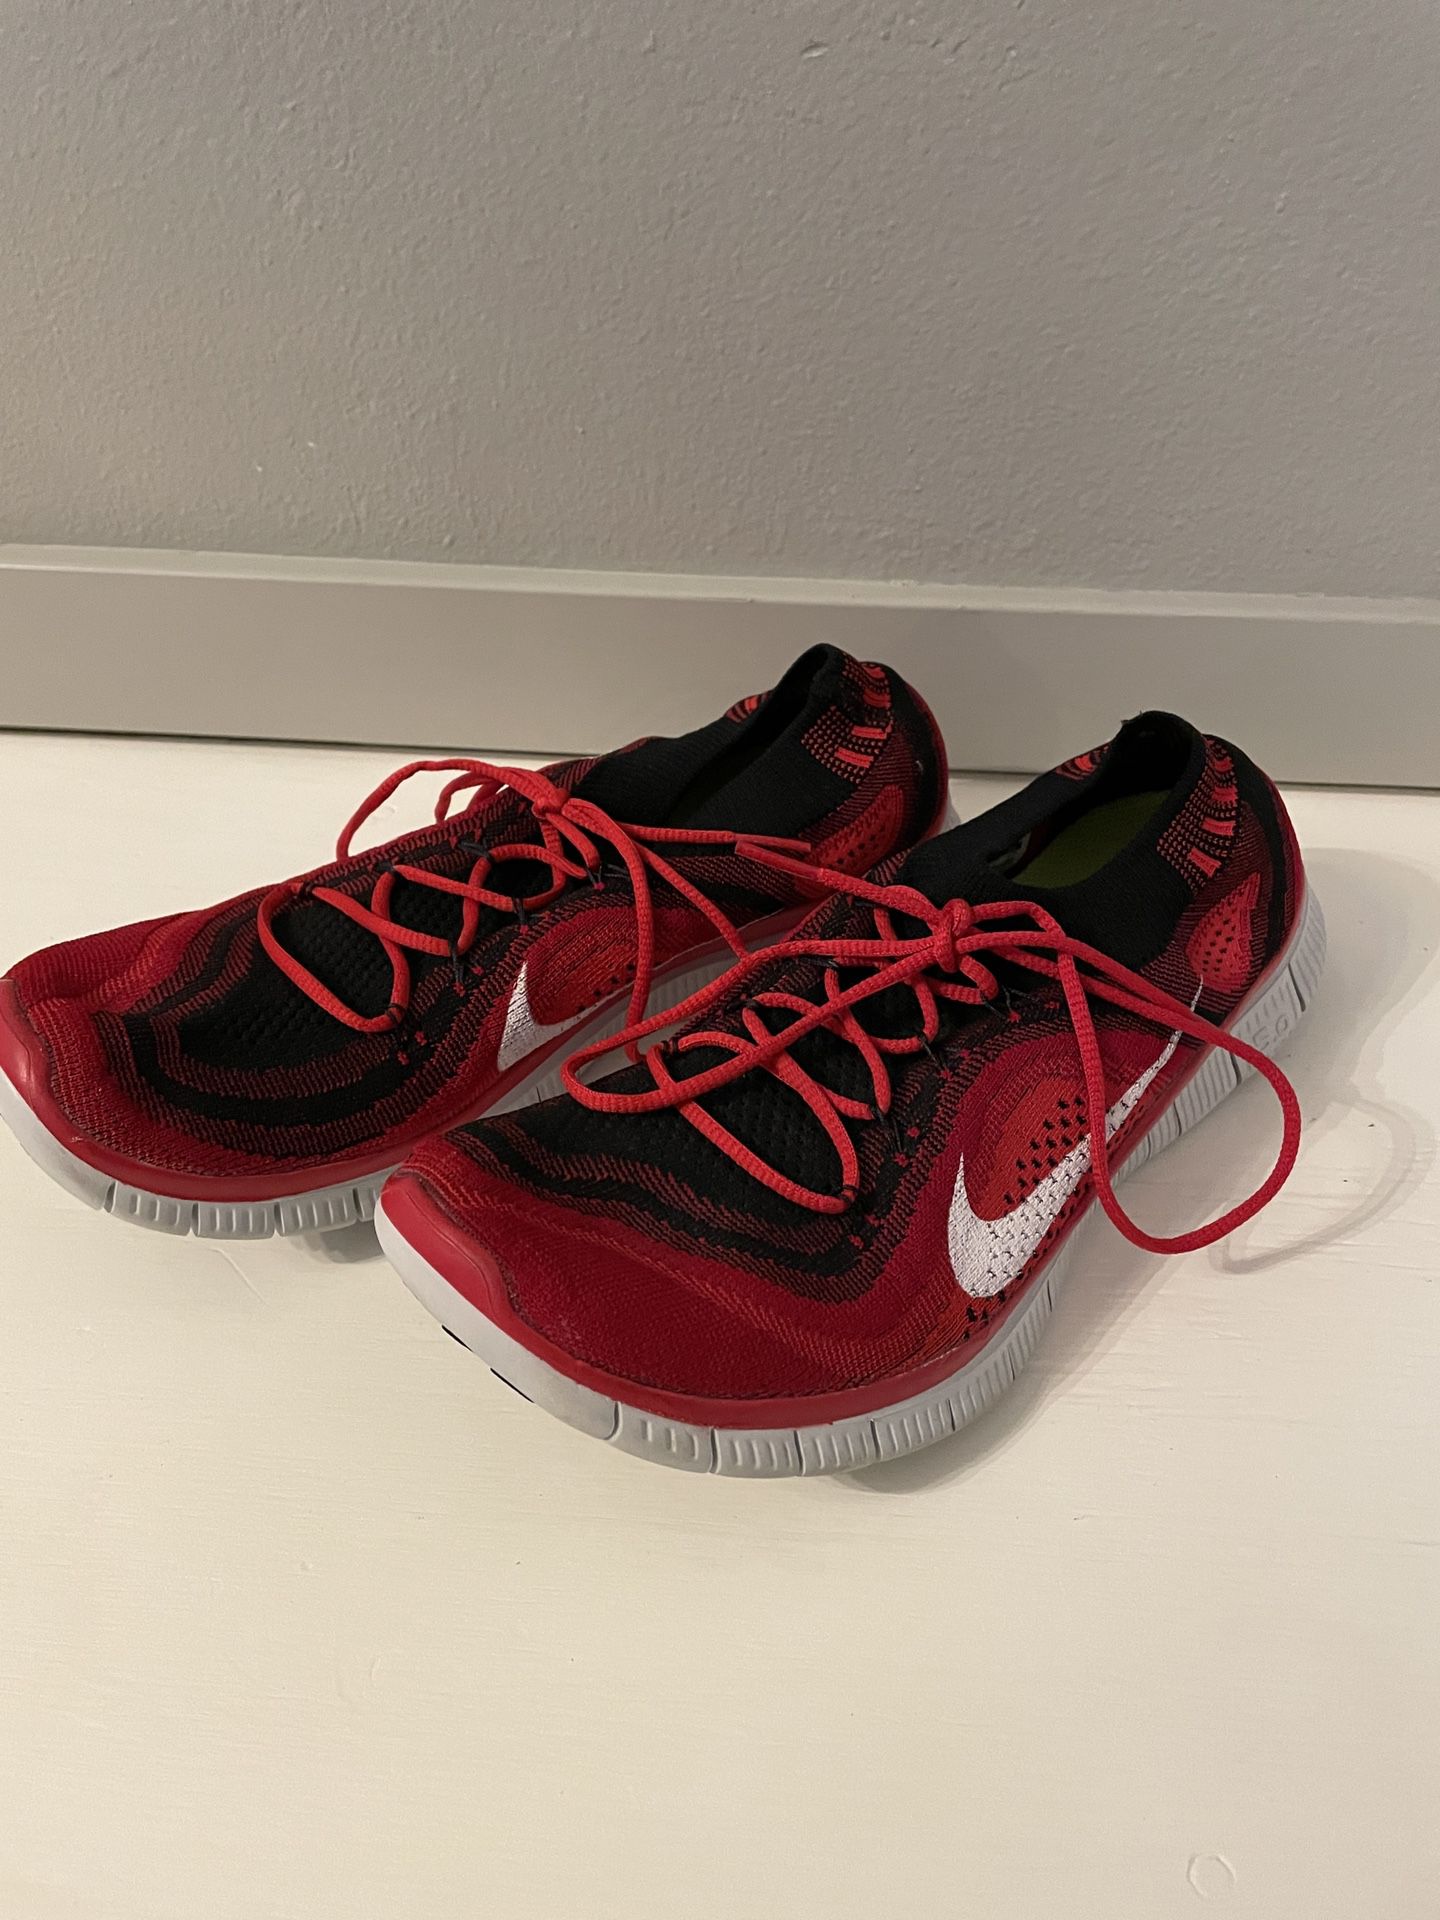 Nike Free 5.0+ running shoe